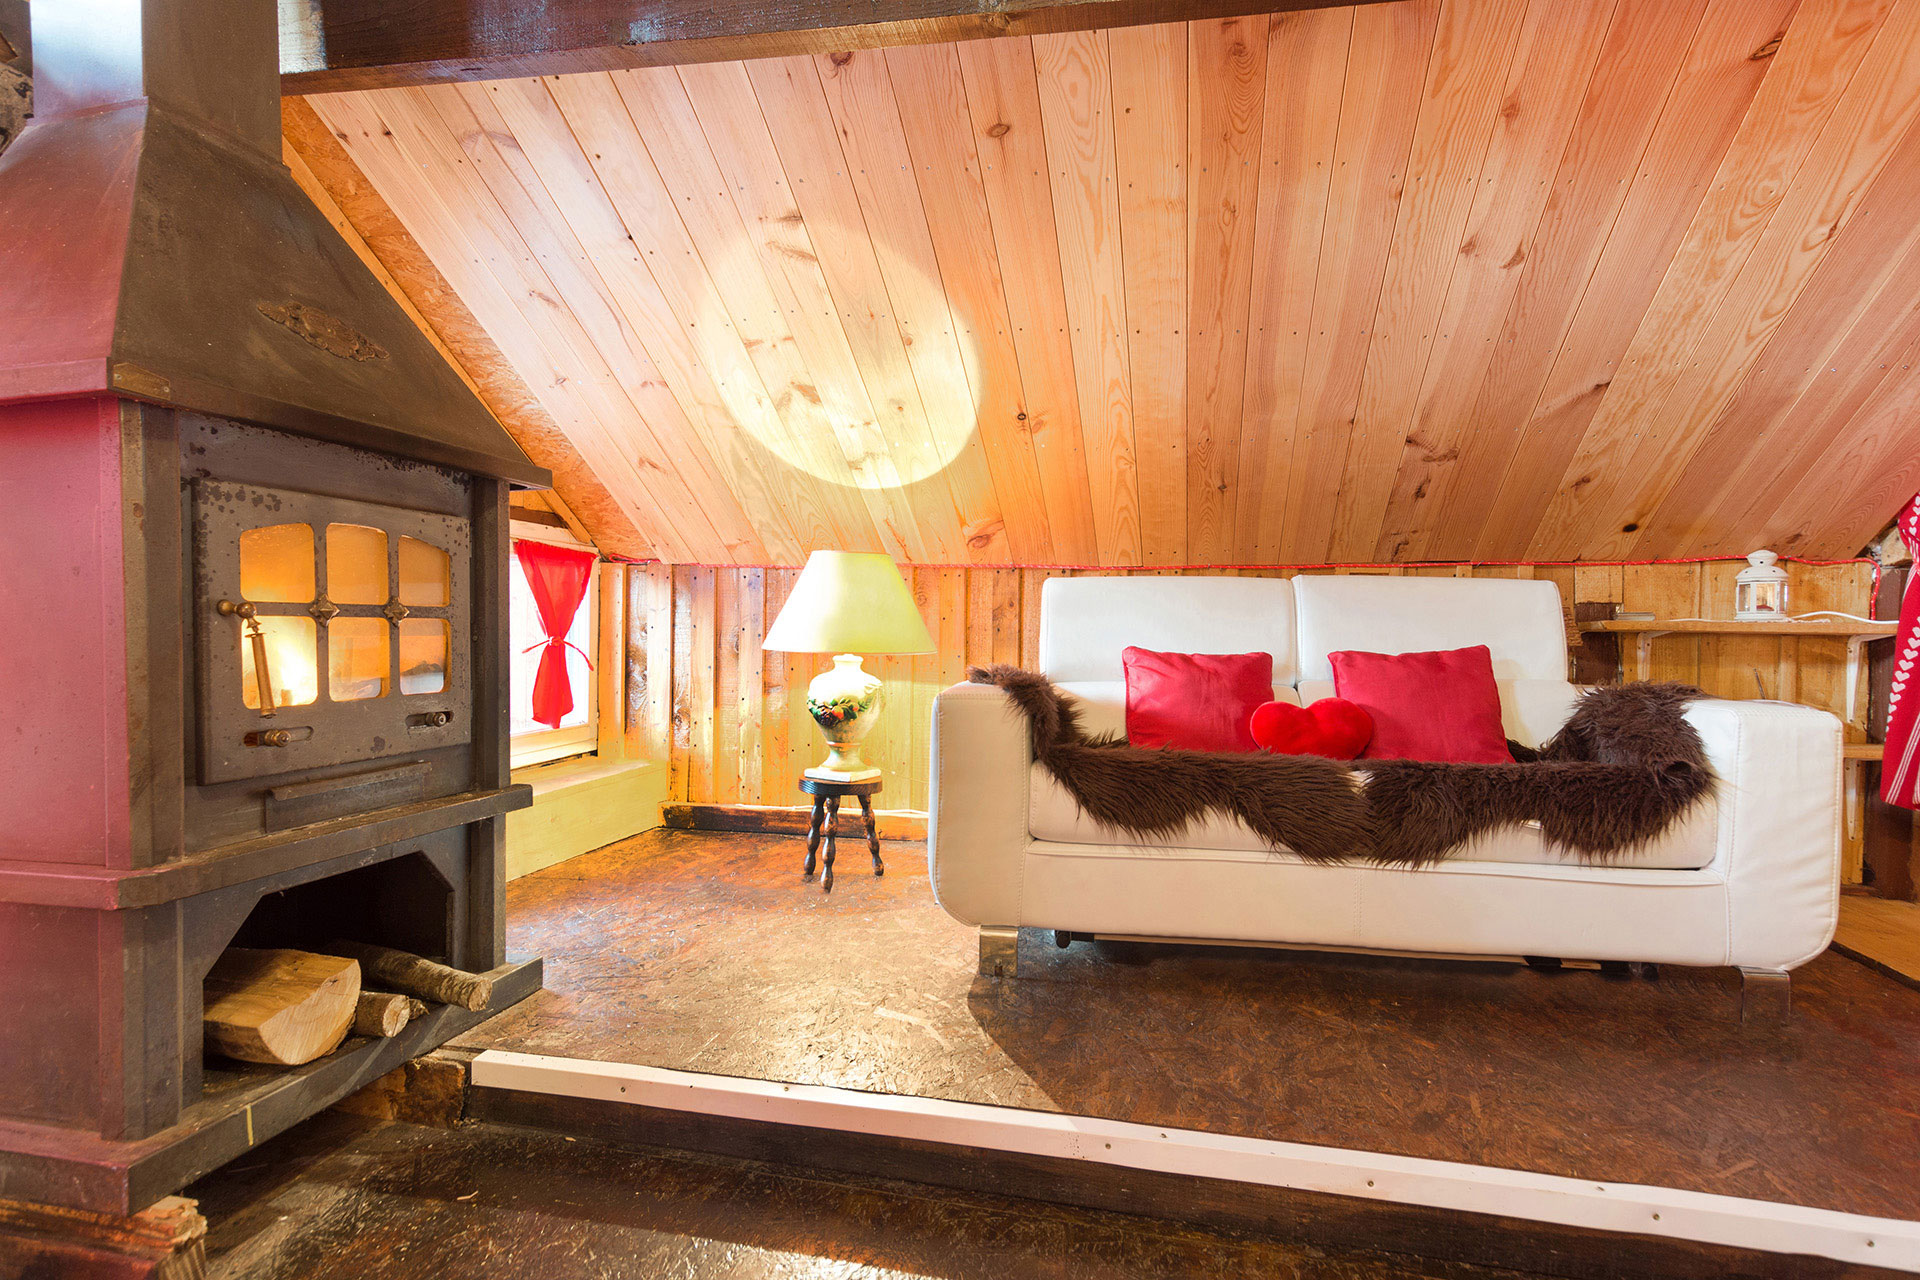 ferienhaus foto wohnzimmer mit offenem kamin und cremfarbenen sofa geschmueckt mit roten kissen und schwarzem fell